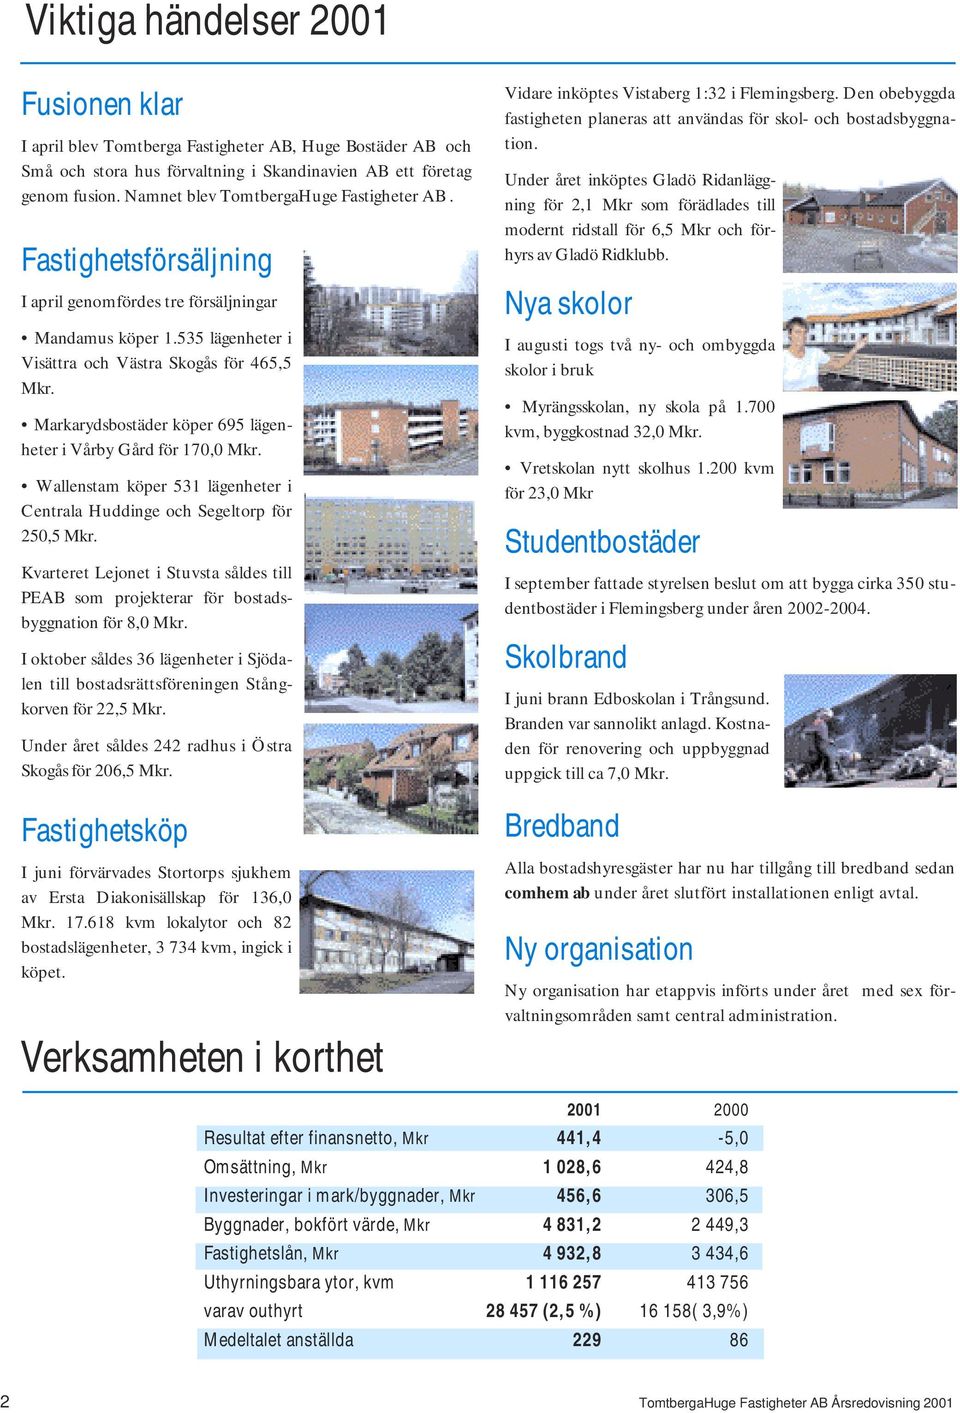 Markarydsbostäder köper 695 lägenheter i Vårby Gård för 170,0 Mkr. Wallenstam köper 531 lägenheter i Centrala Huddinge och Segeltorp för 250,5 Mkr.